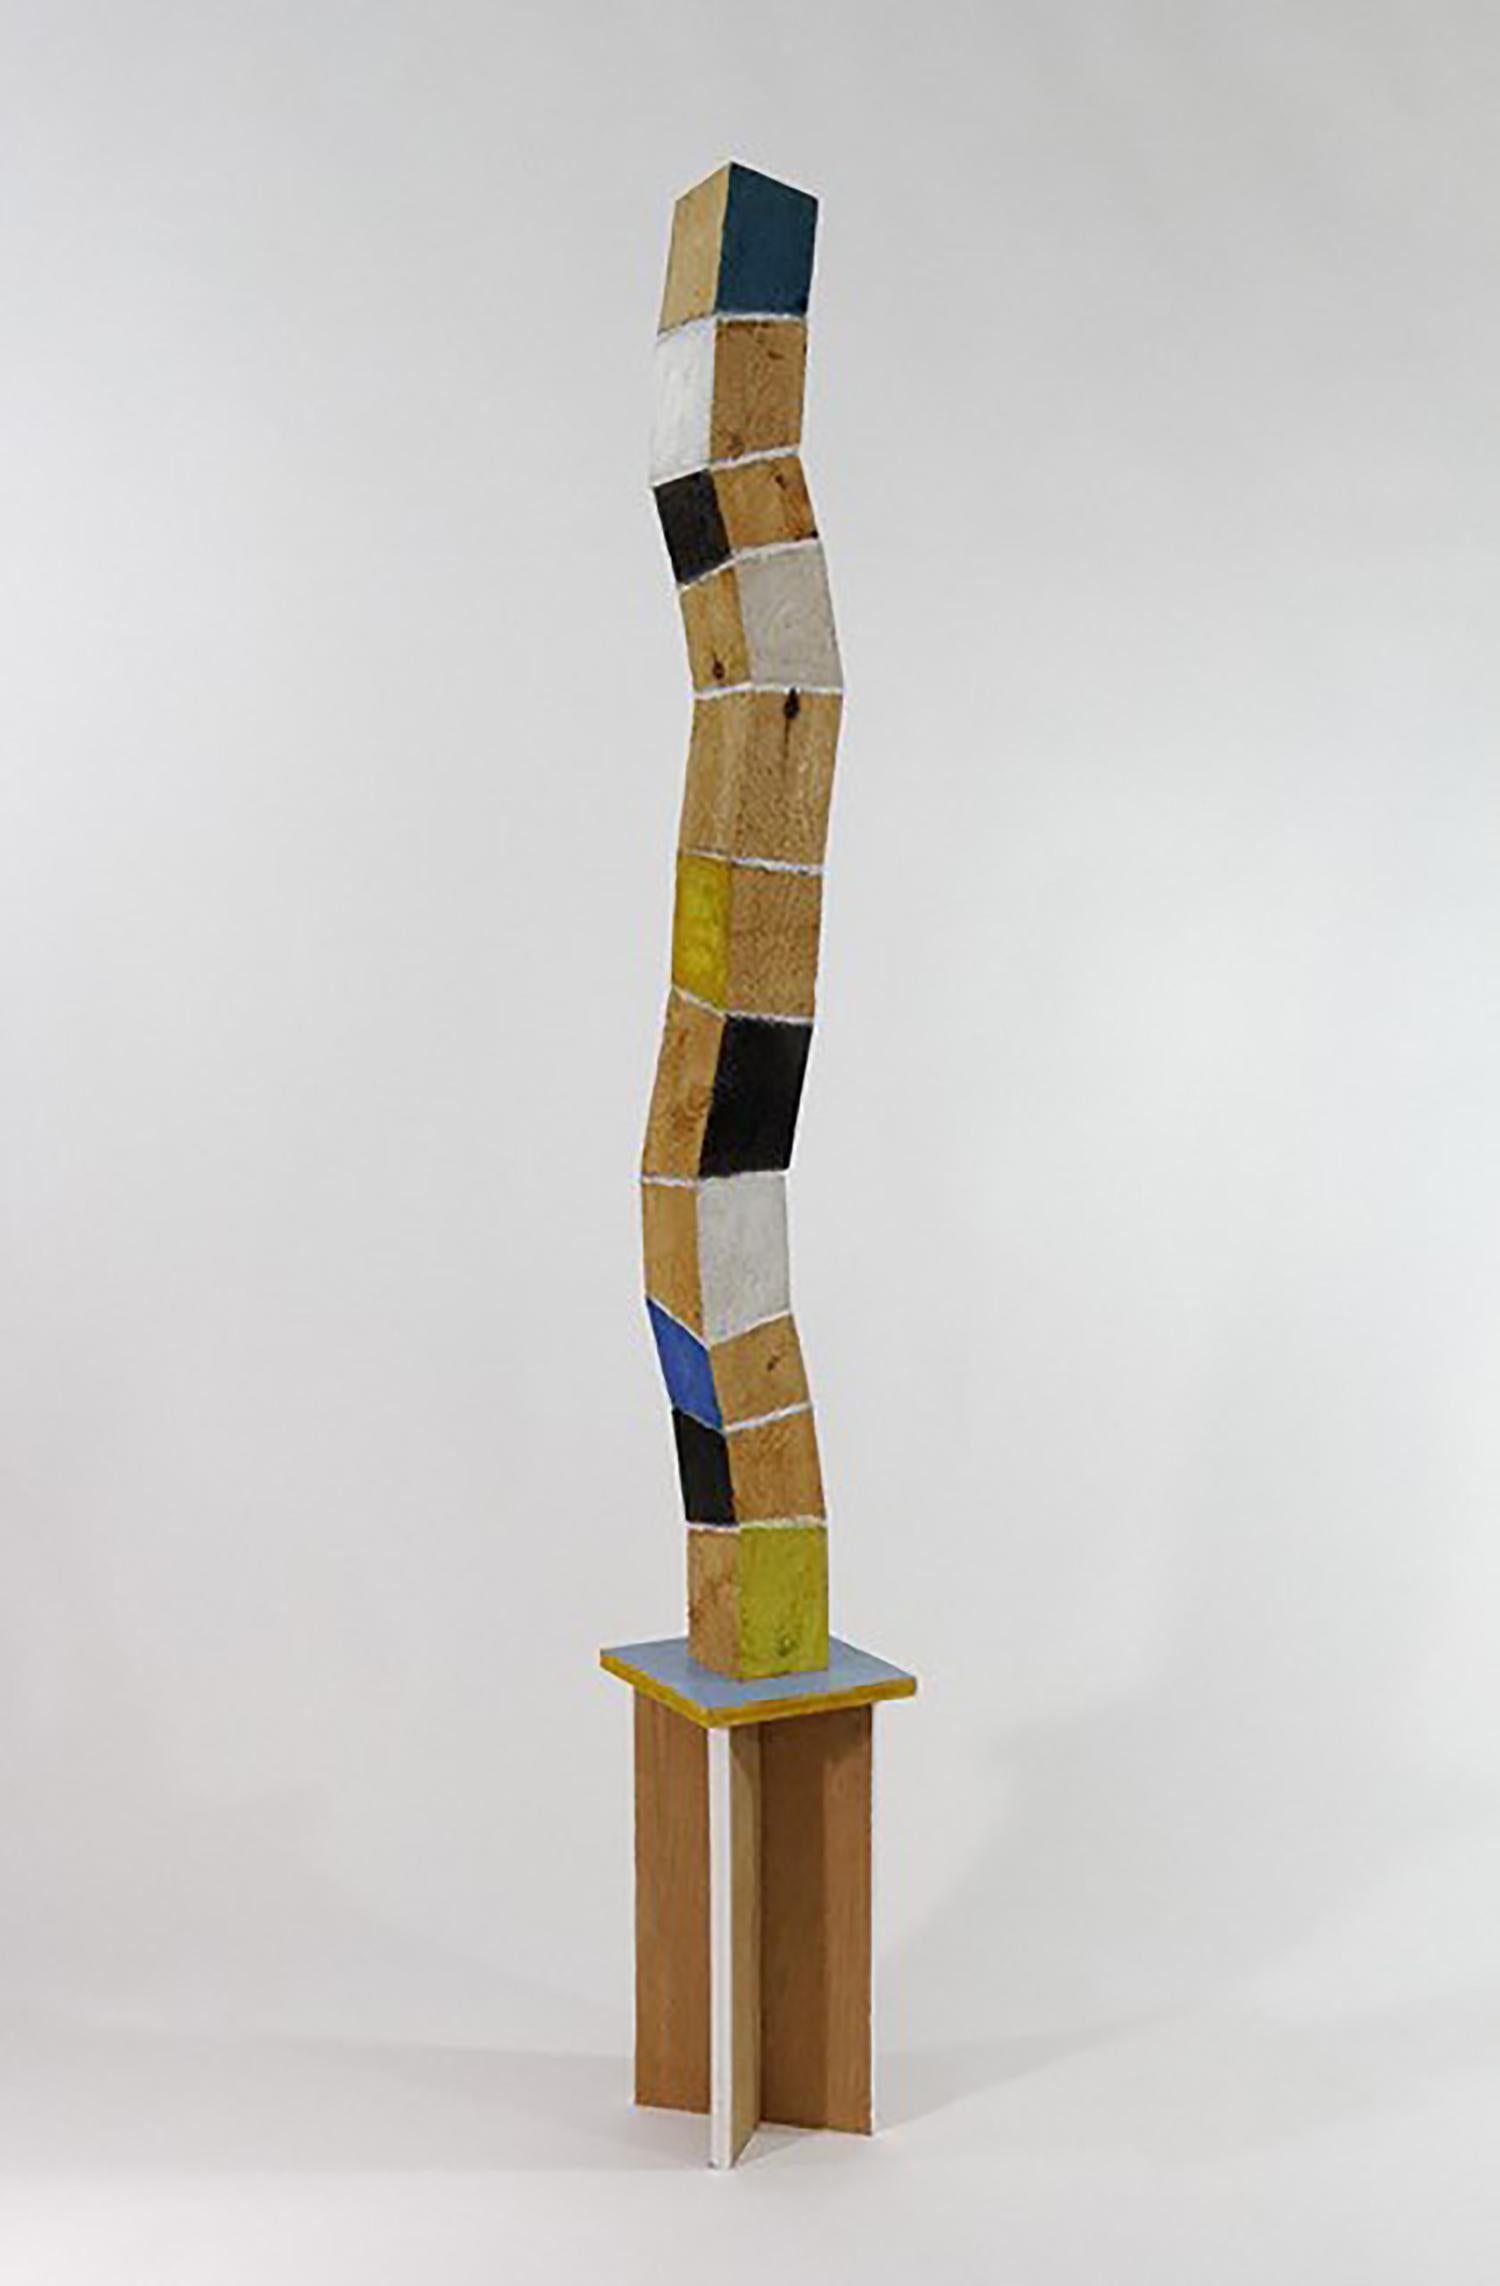 Abstract Sculpture Peter Hoffman - Nouvelle croissance (sculpture de tour debout verticale en bois courbé et multicolore) 